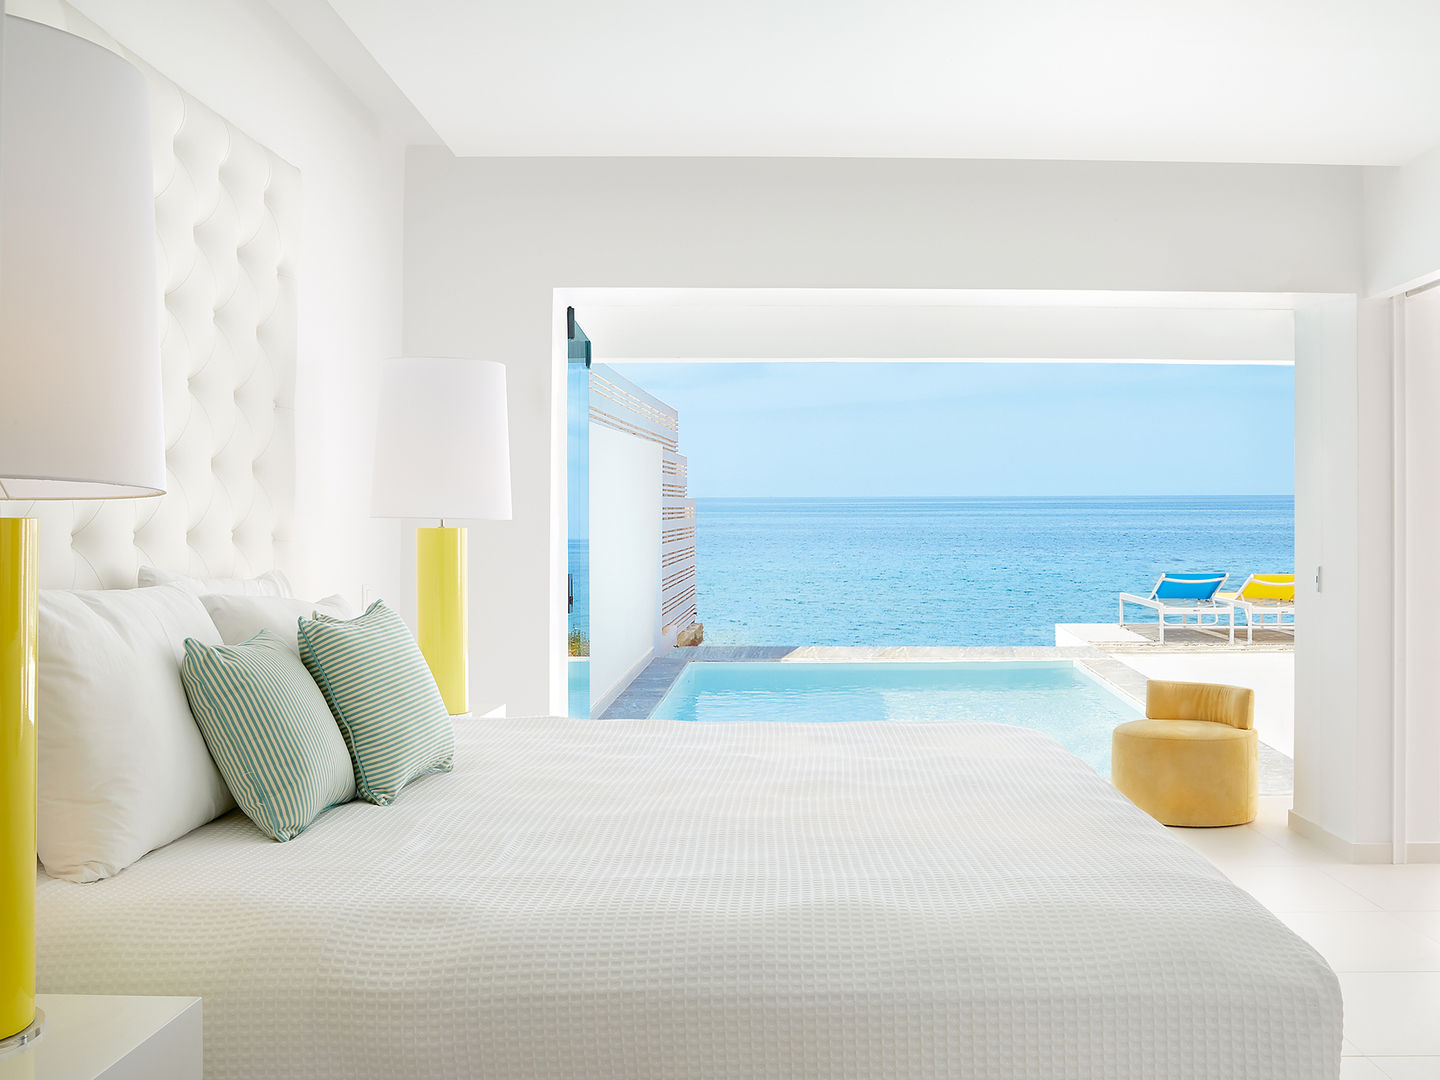 Grecia . Interdesign, Interdesign Interiores Interdesign Interiores Commercial spaces Hotels